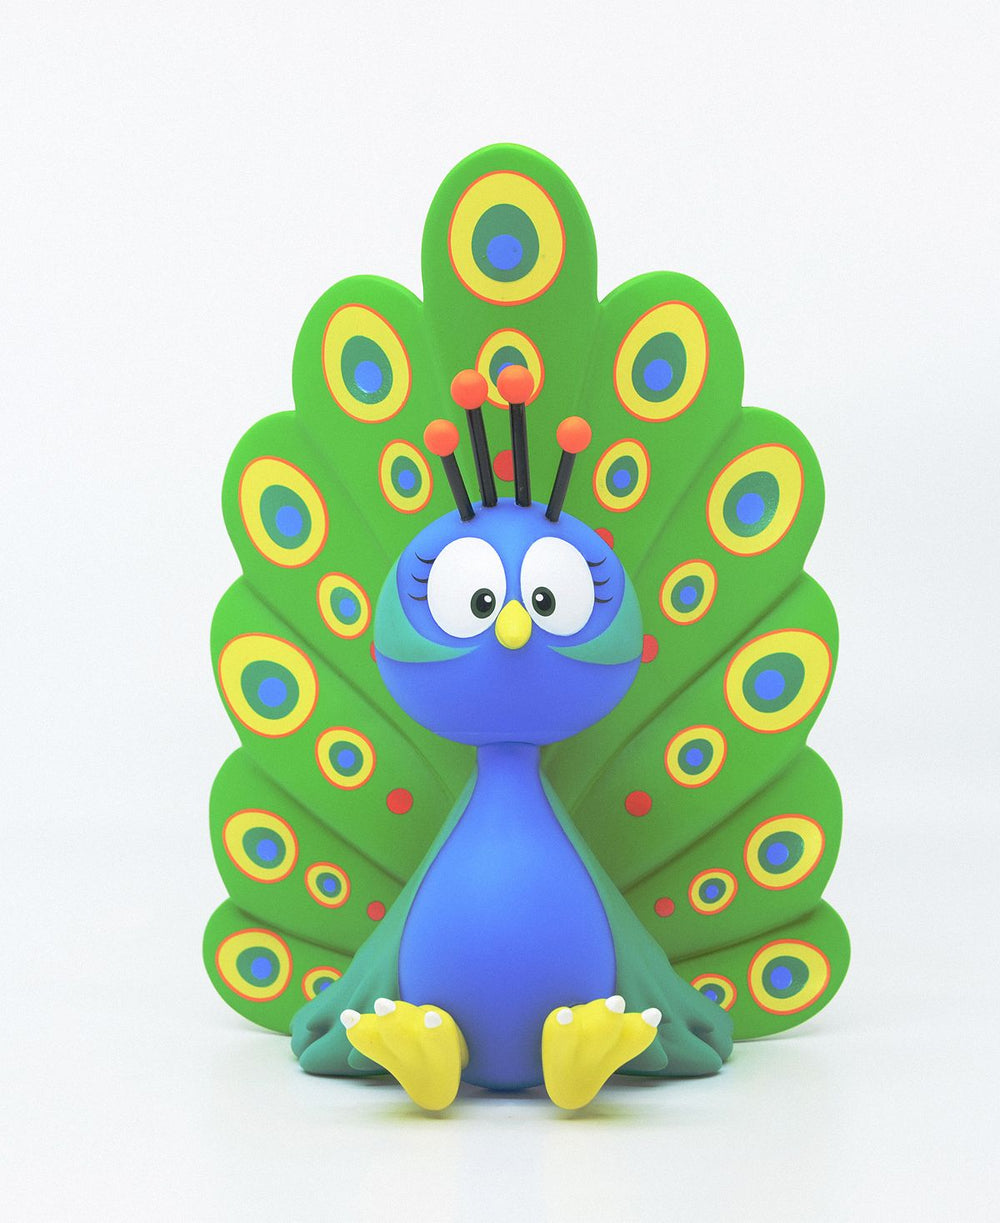 VeeFriends 6" Vinyl Collectible Figurine - Practical Peacock